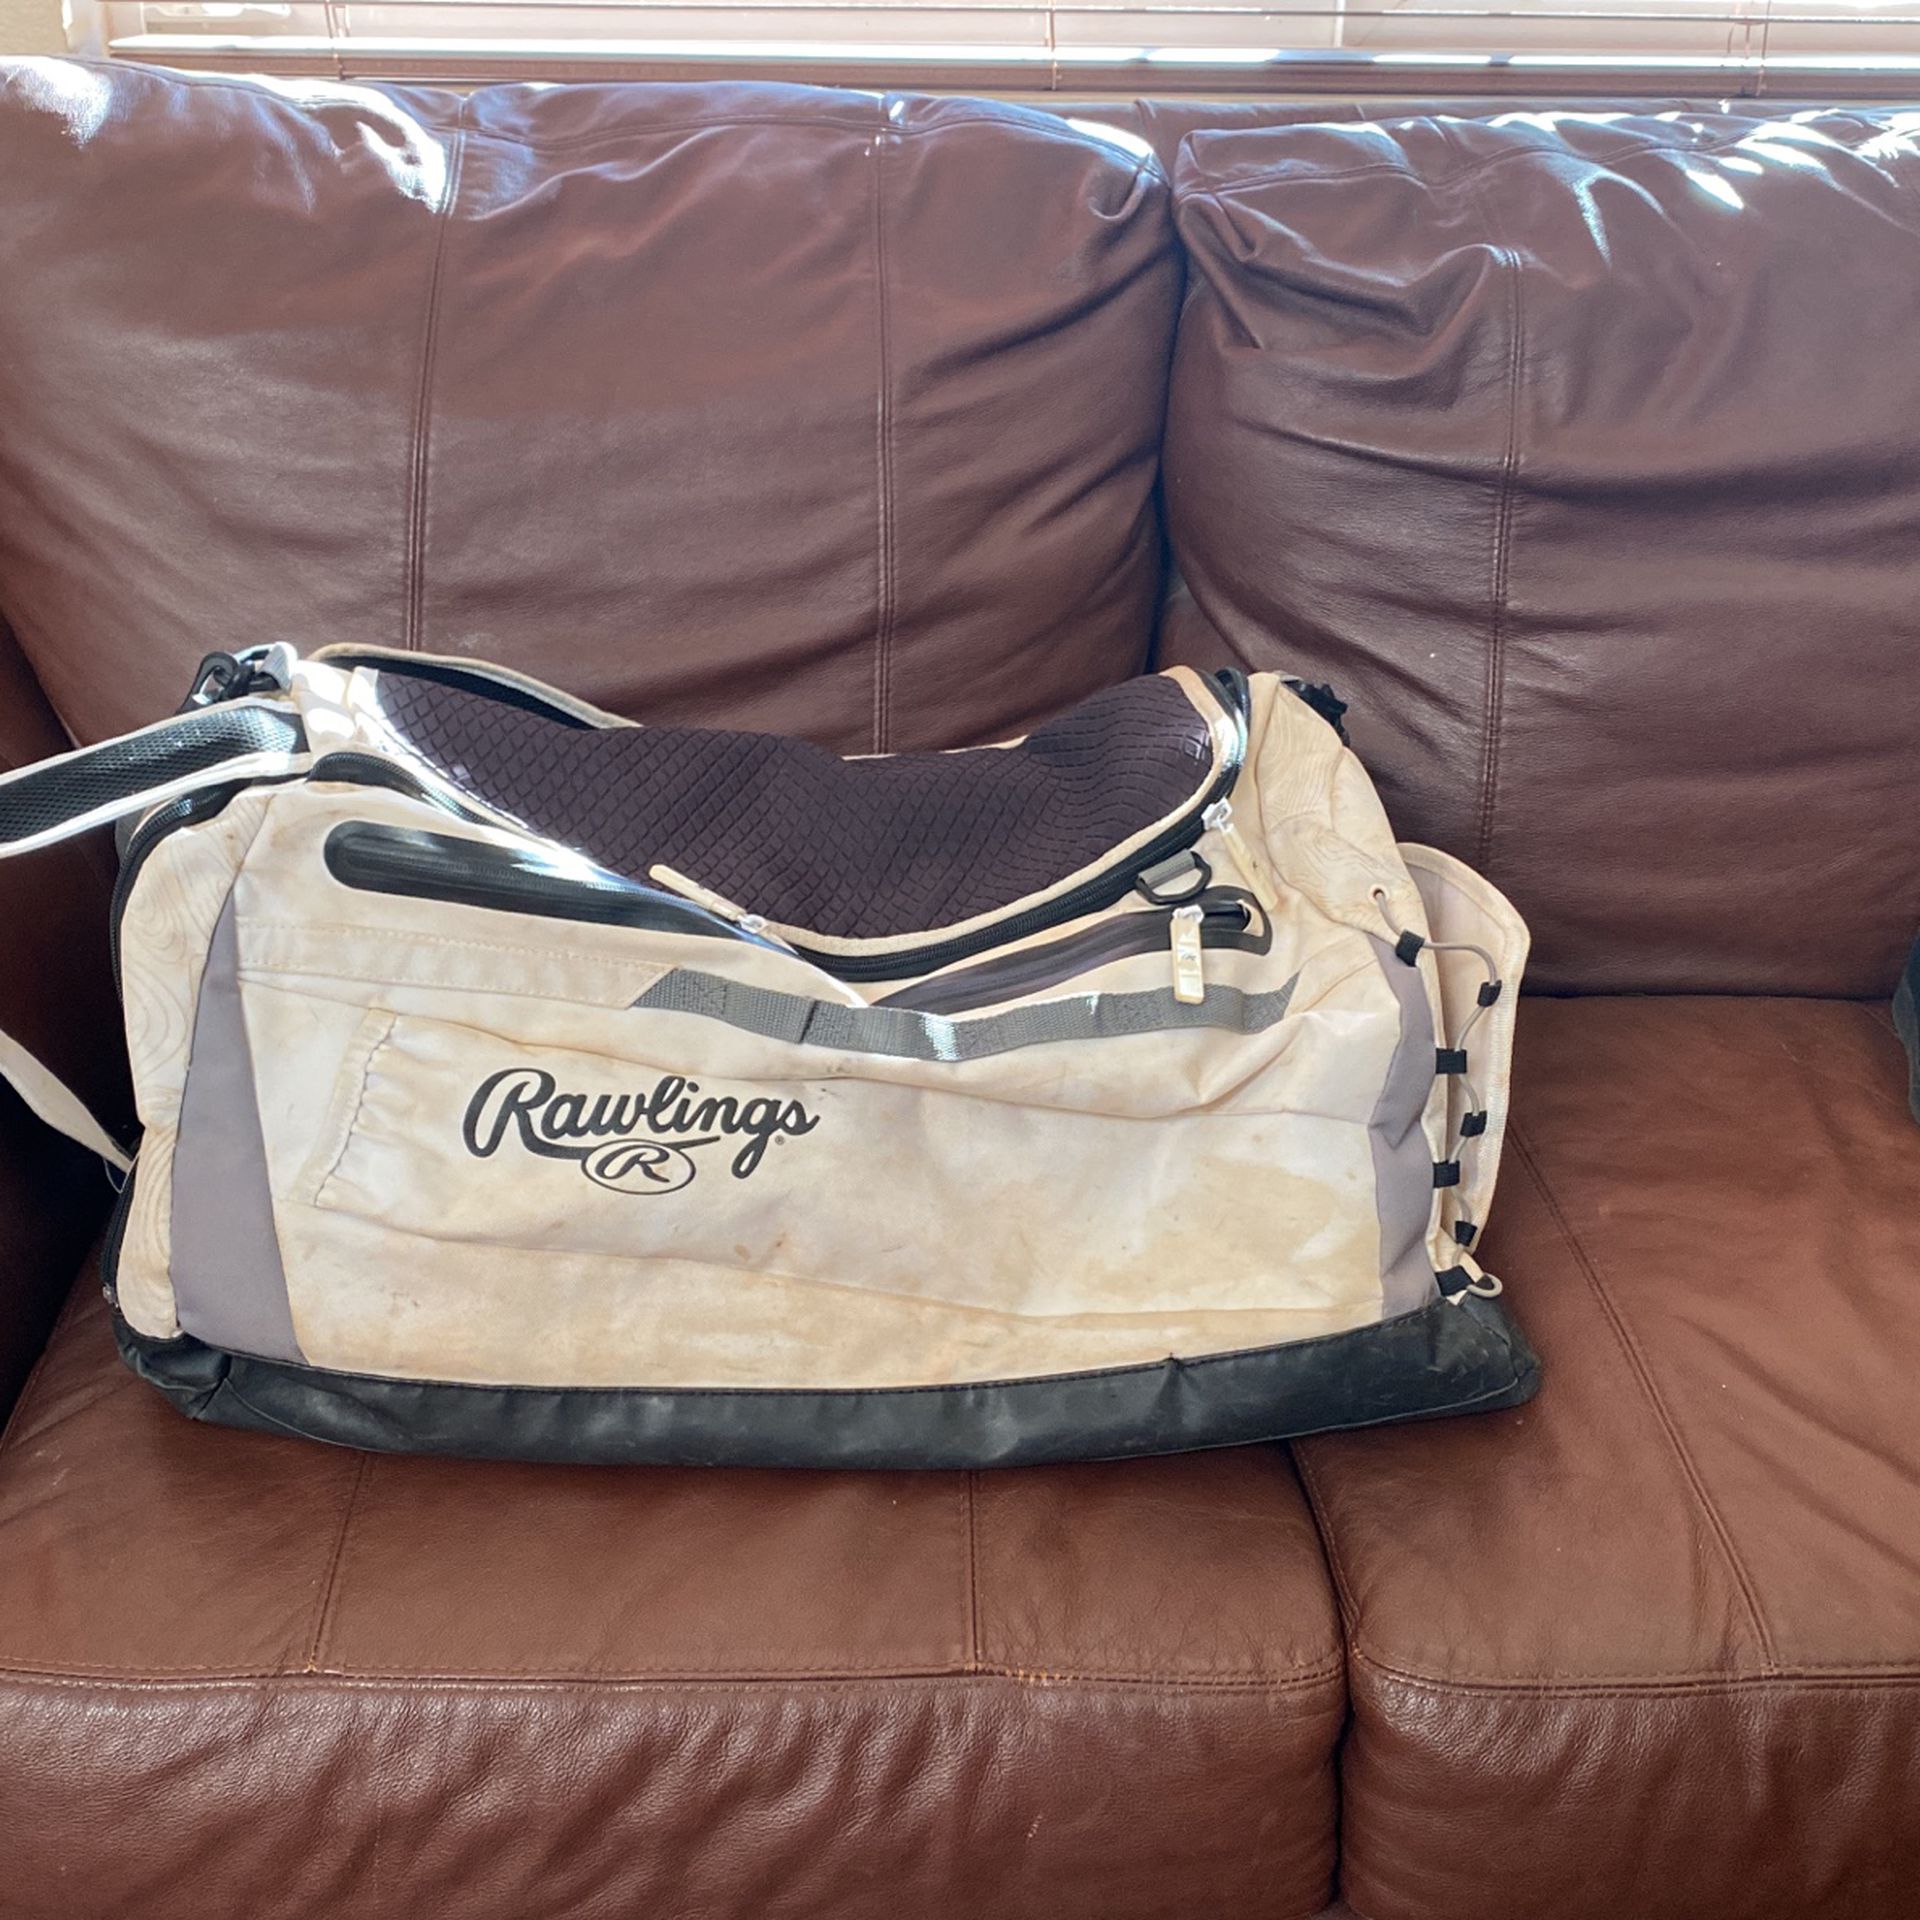 Rawlings Hybrid Baseball Backpack/Duffle Bag